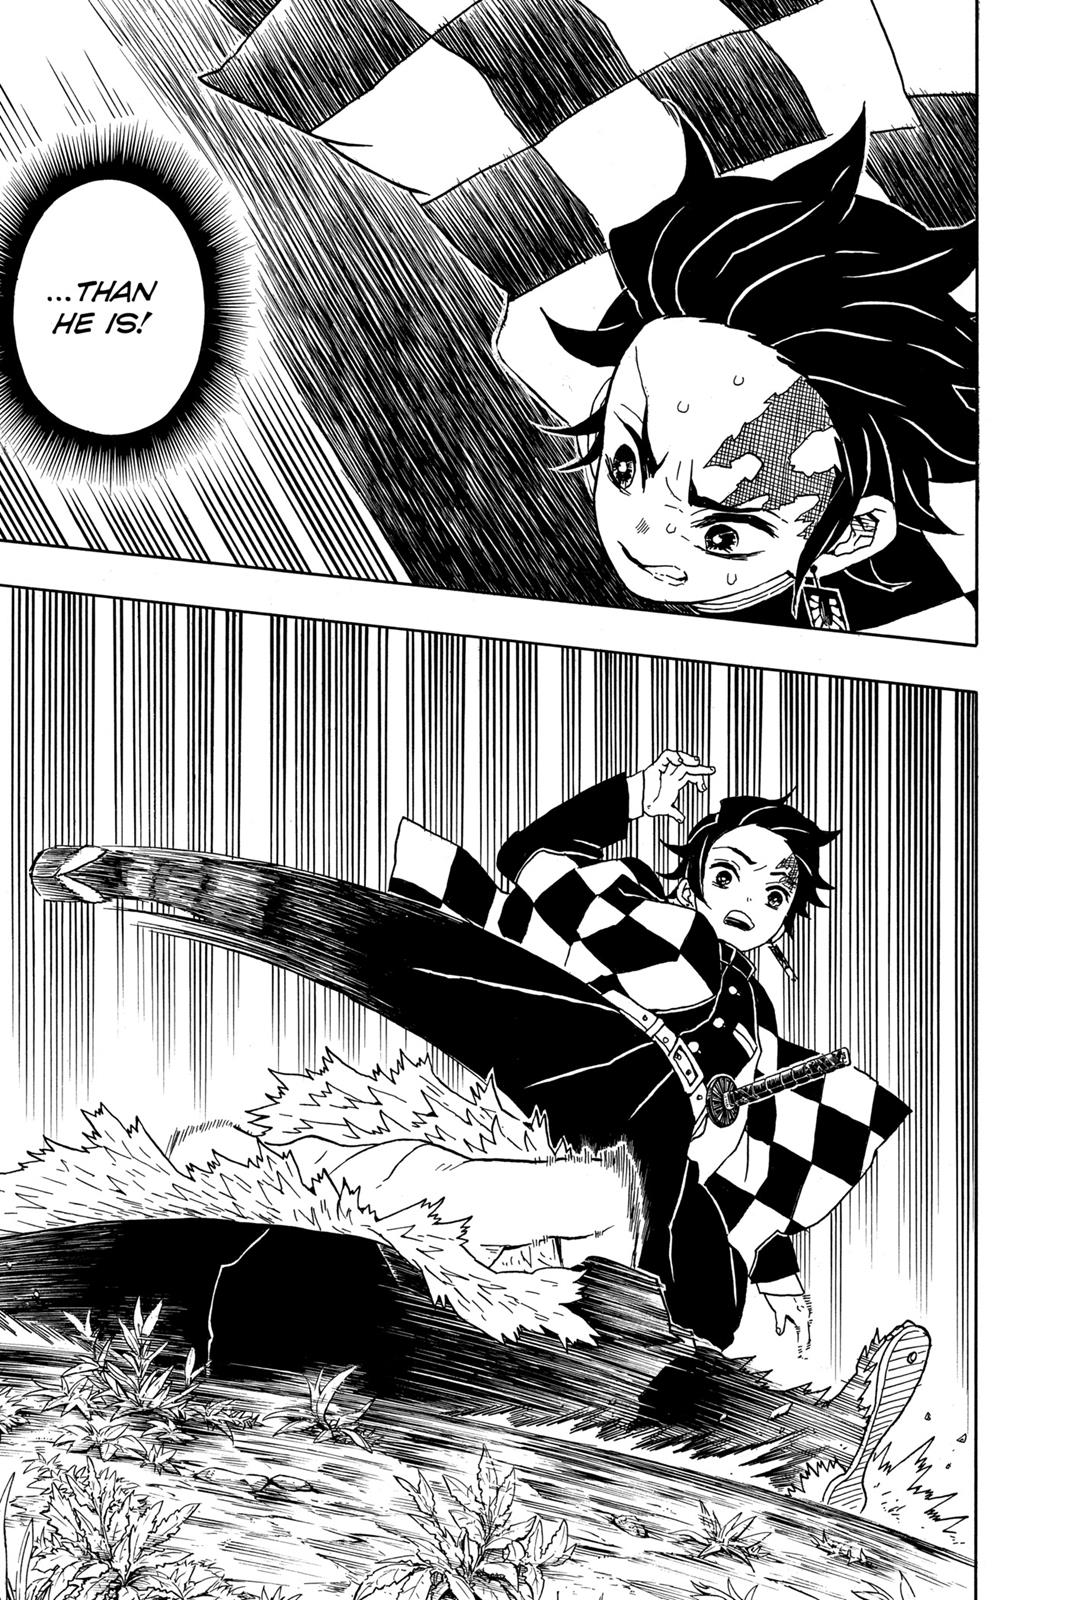 Demon Slayer Manga Manga Chapter - 26 - image 21